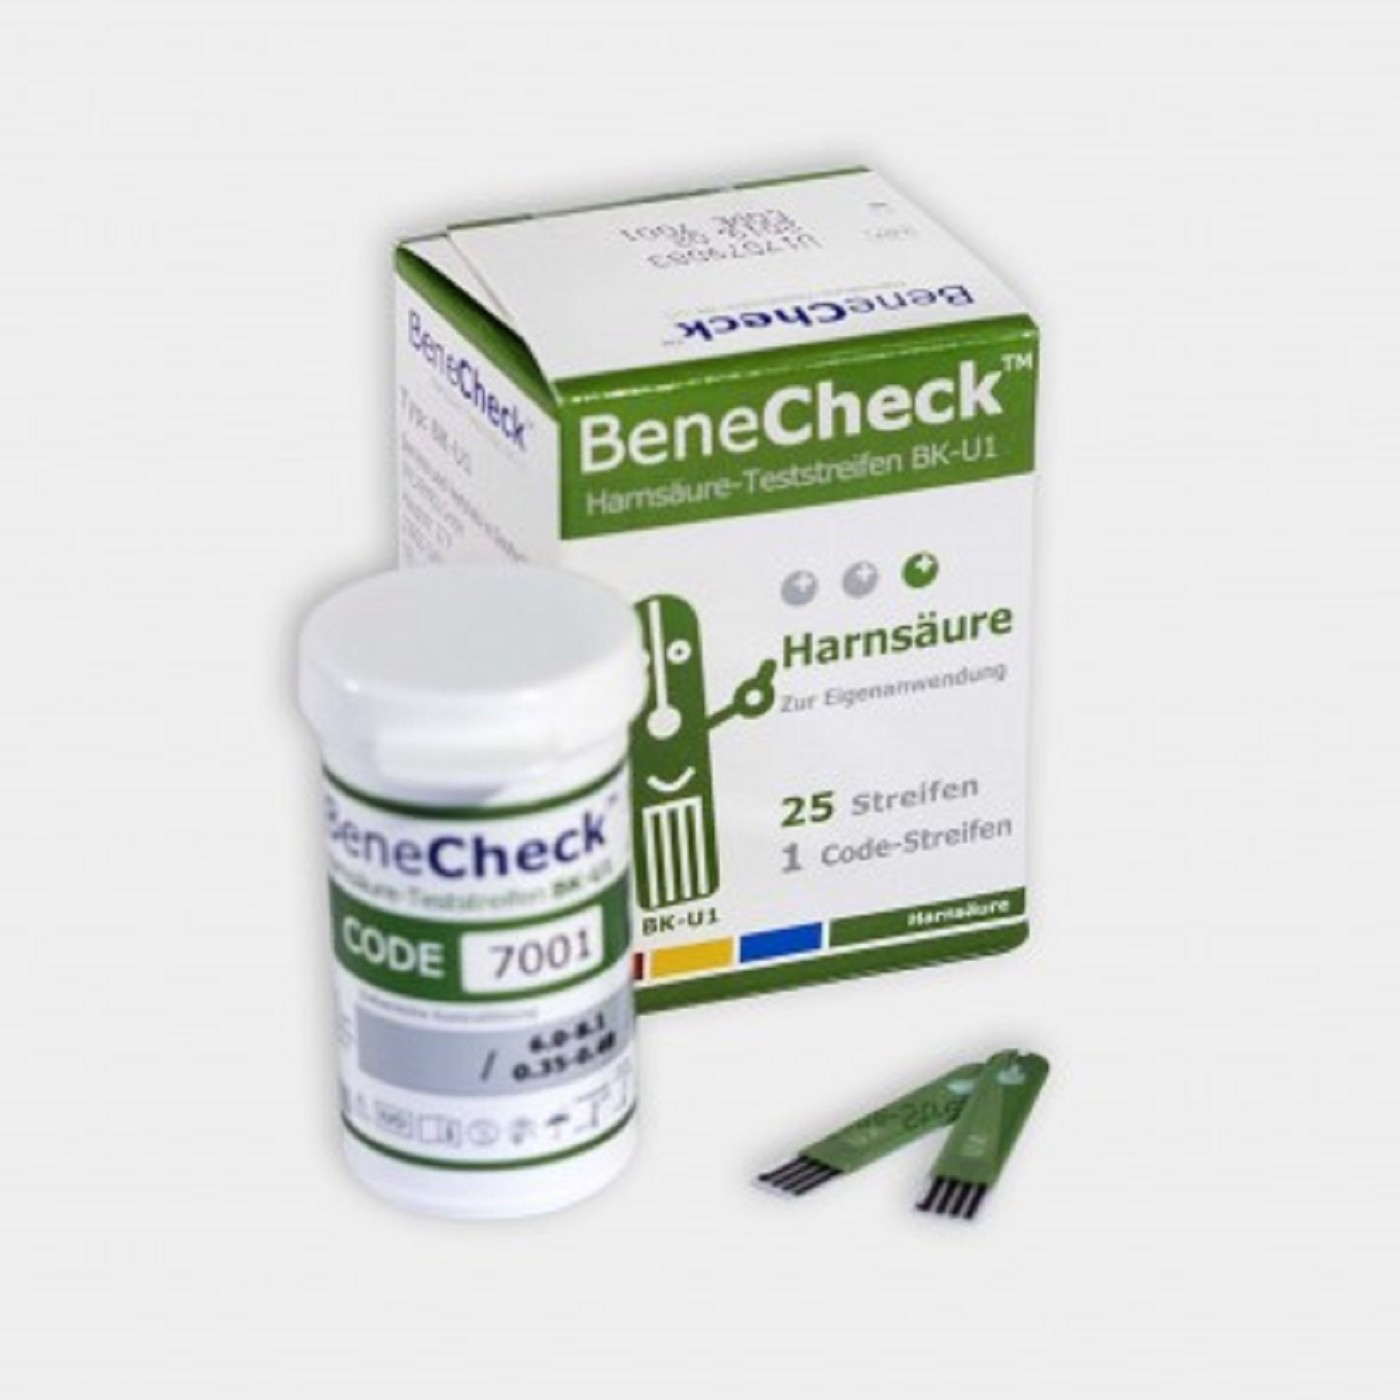 BeneCheck Harnsäure Teststreifen BK-U1